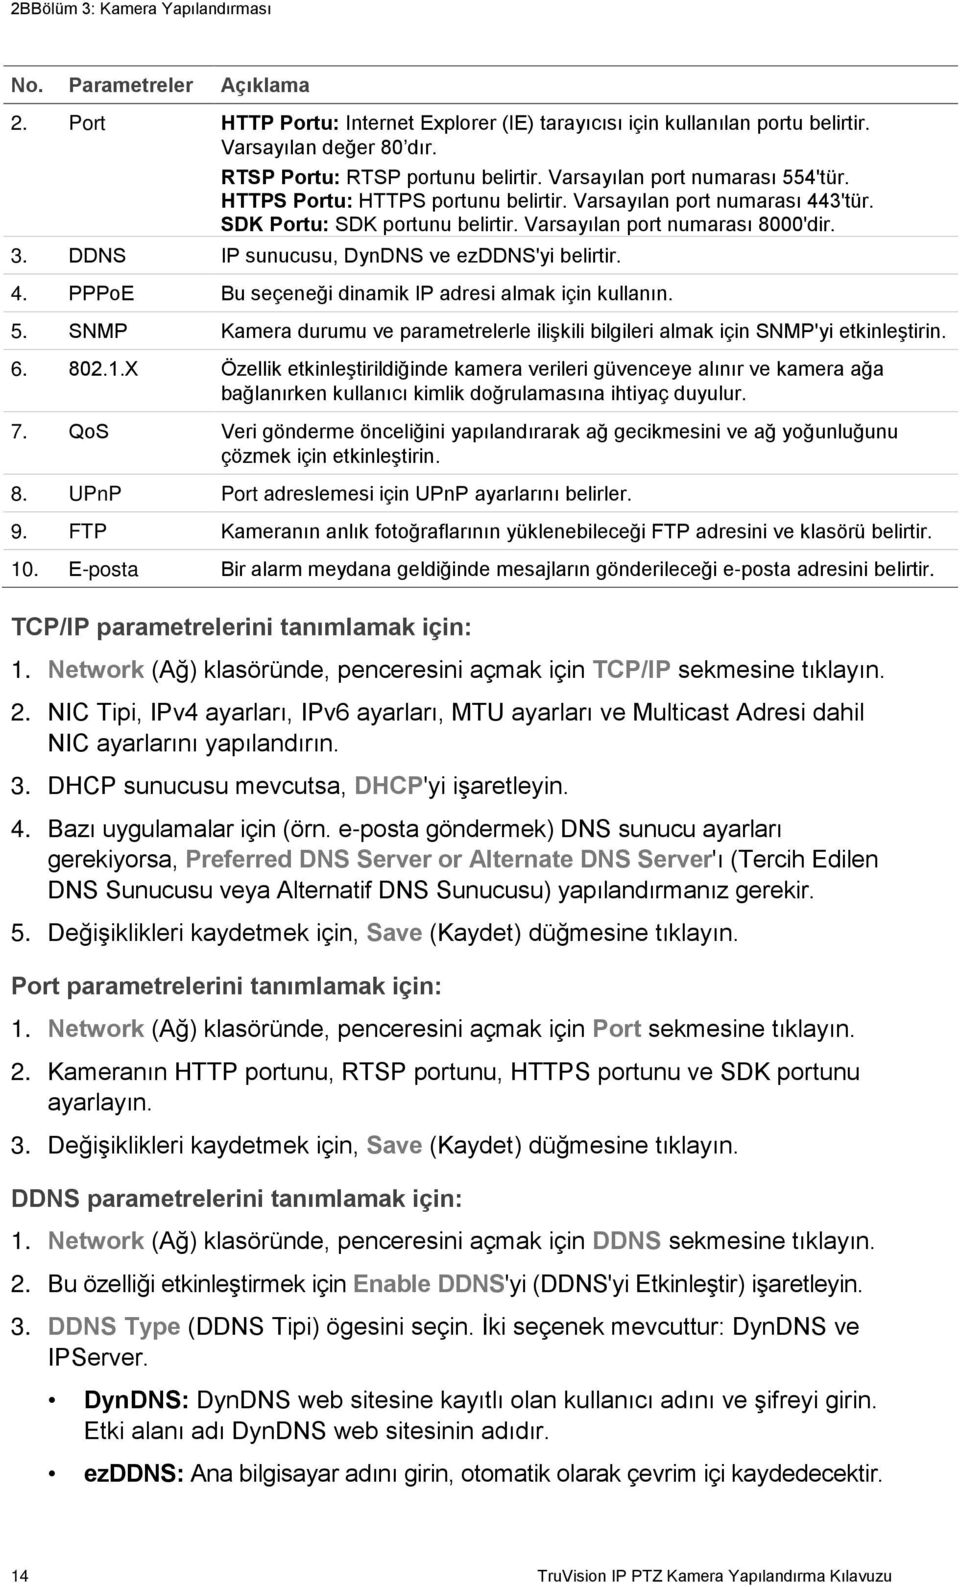 DDNS IP sunucusu, DynDNS ve ezddns'yi belirtir. 4. PPPoE Bu seçeneği dinamik IP adresi almak için kullanın. 5. SNMP Kamera durumu ve parametrelerle ilişkili bilgileri almak için SNMP'yi etkinleştirin.